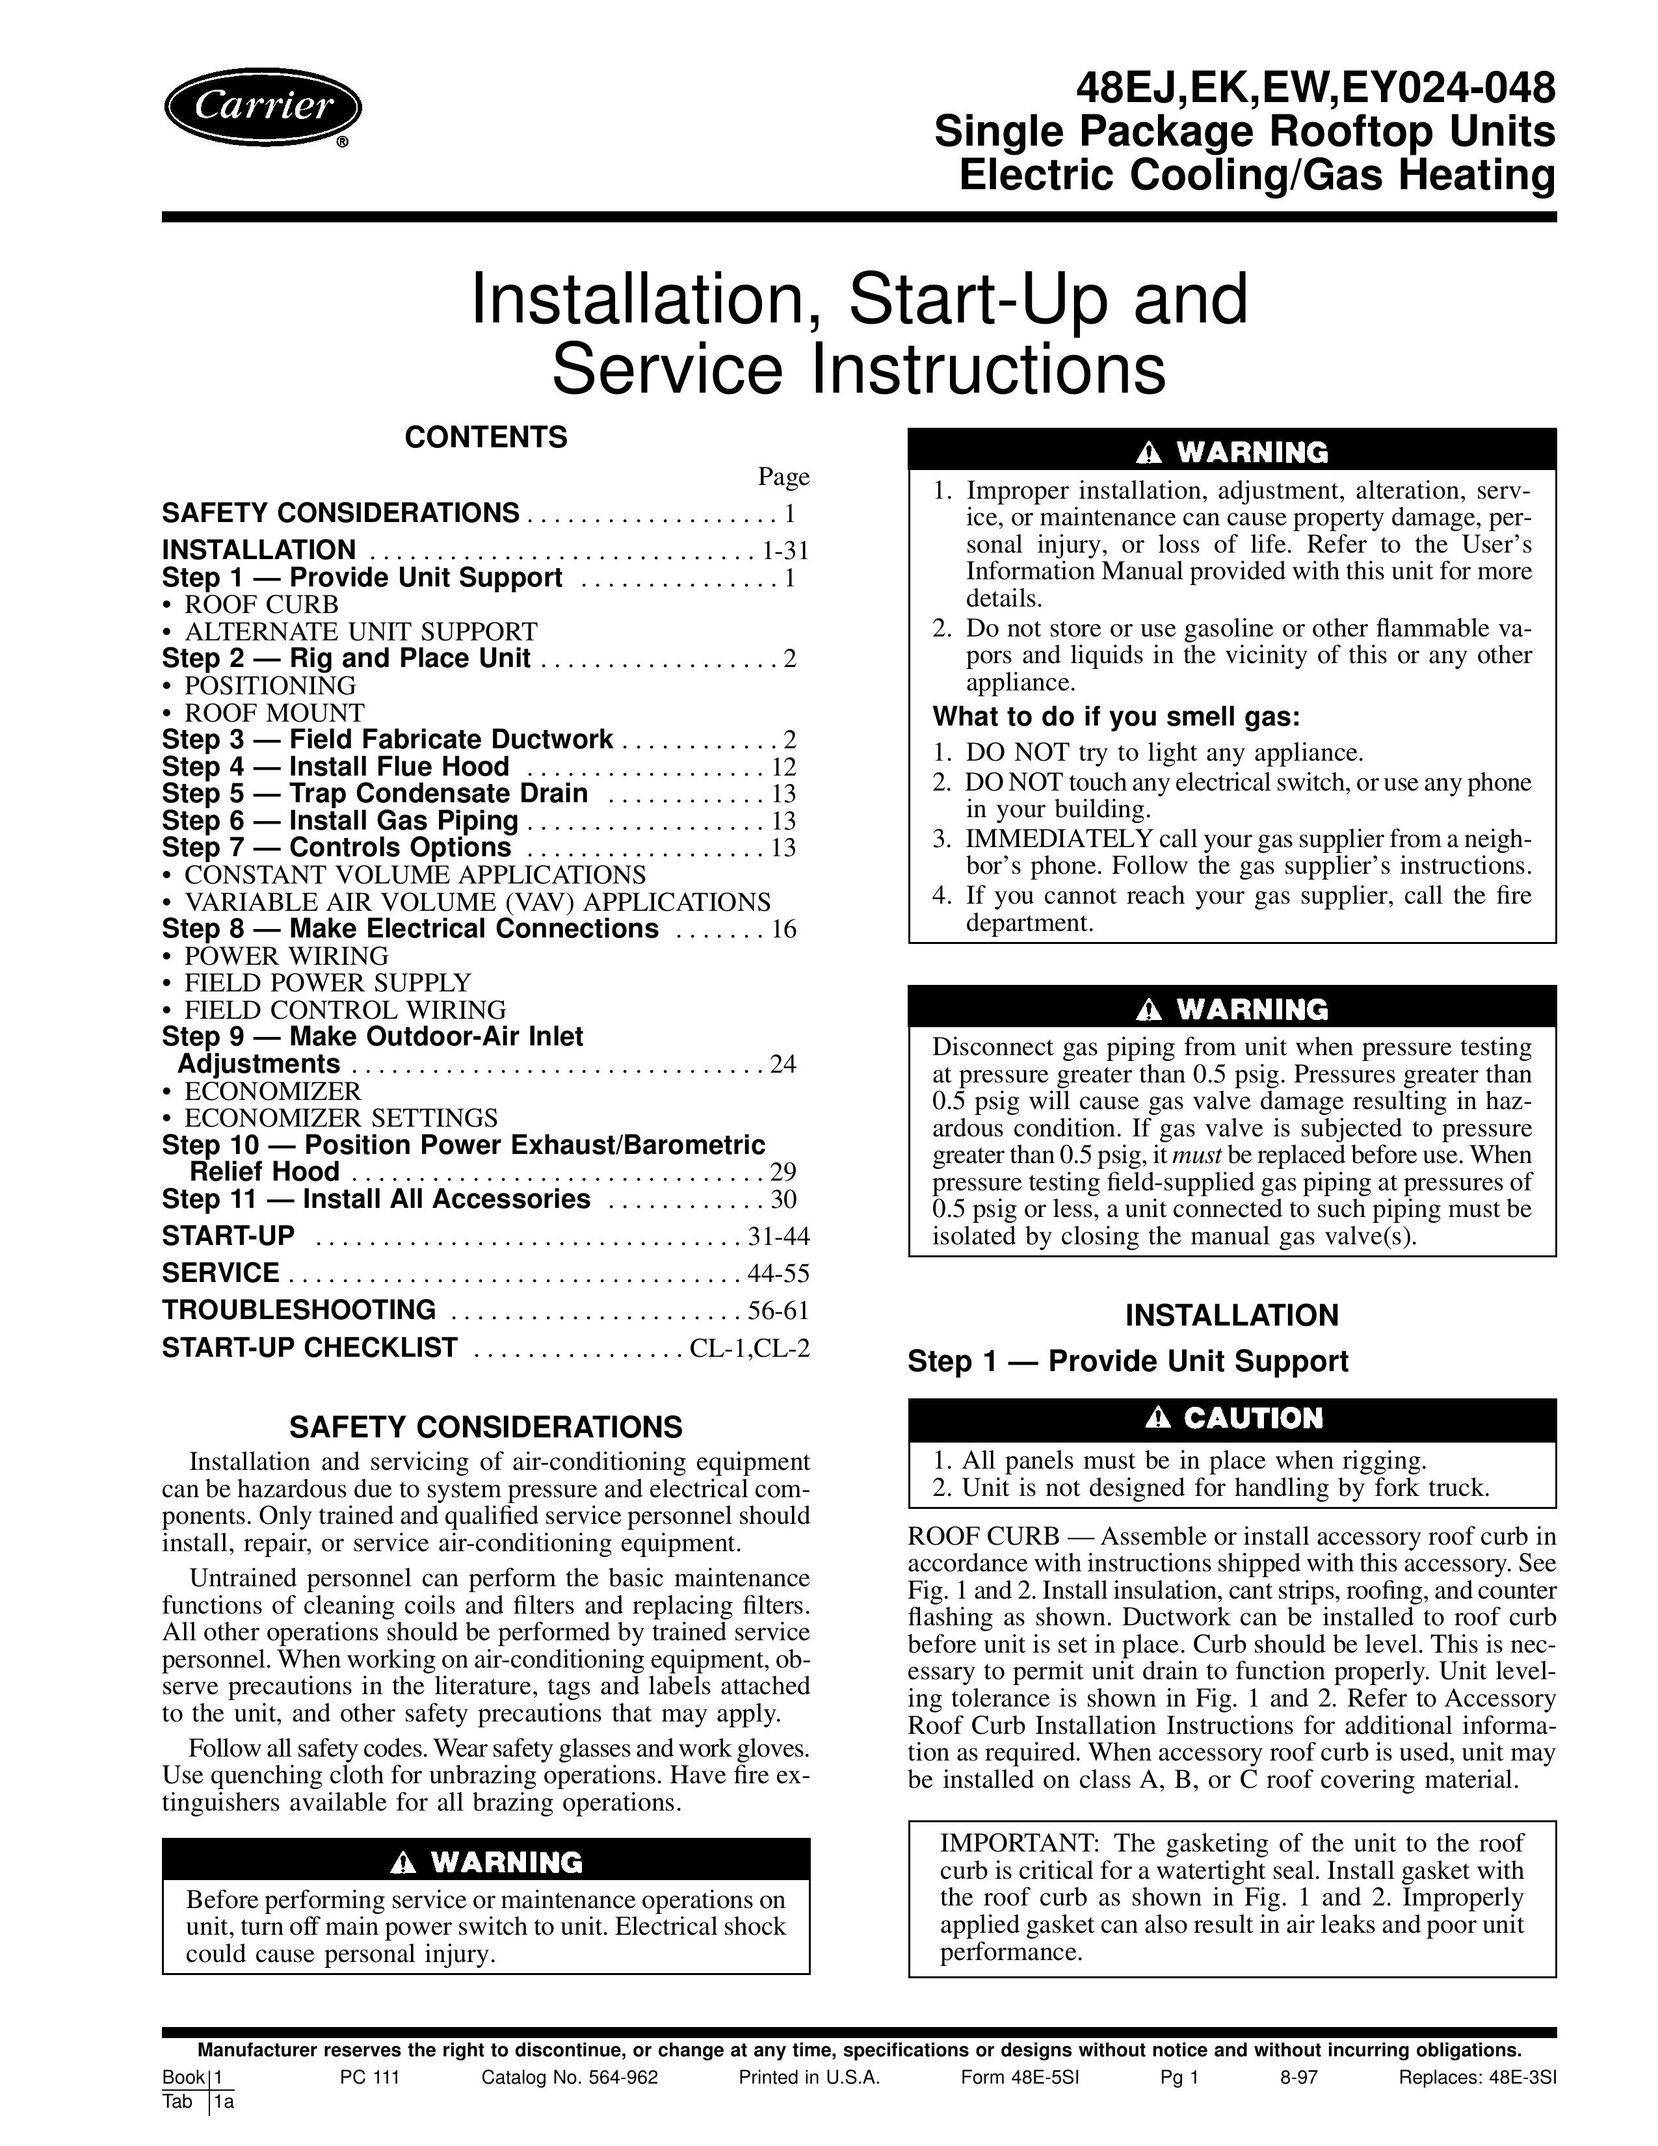 Carrier EW Gas Heater User Manual